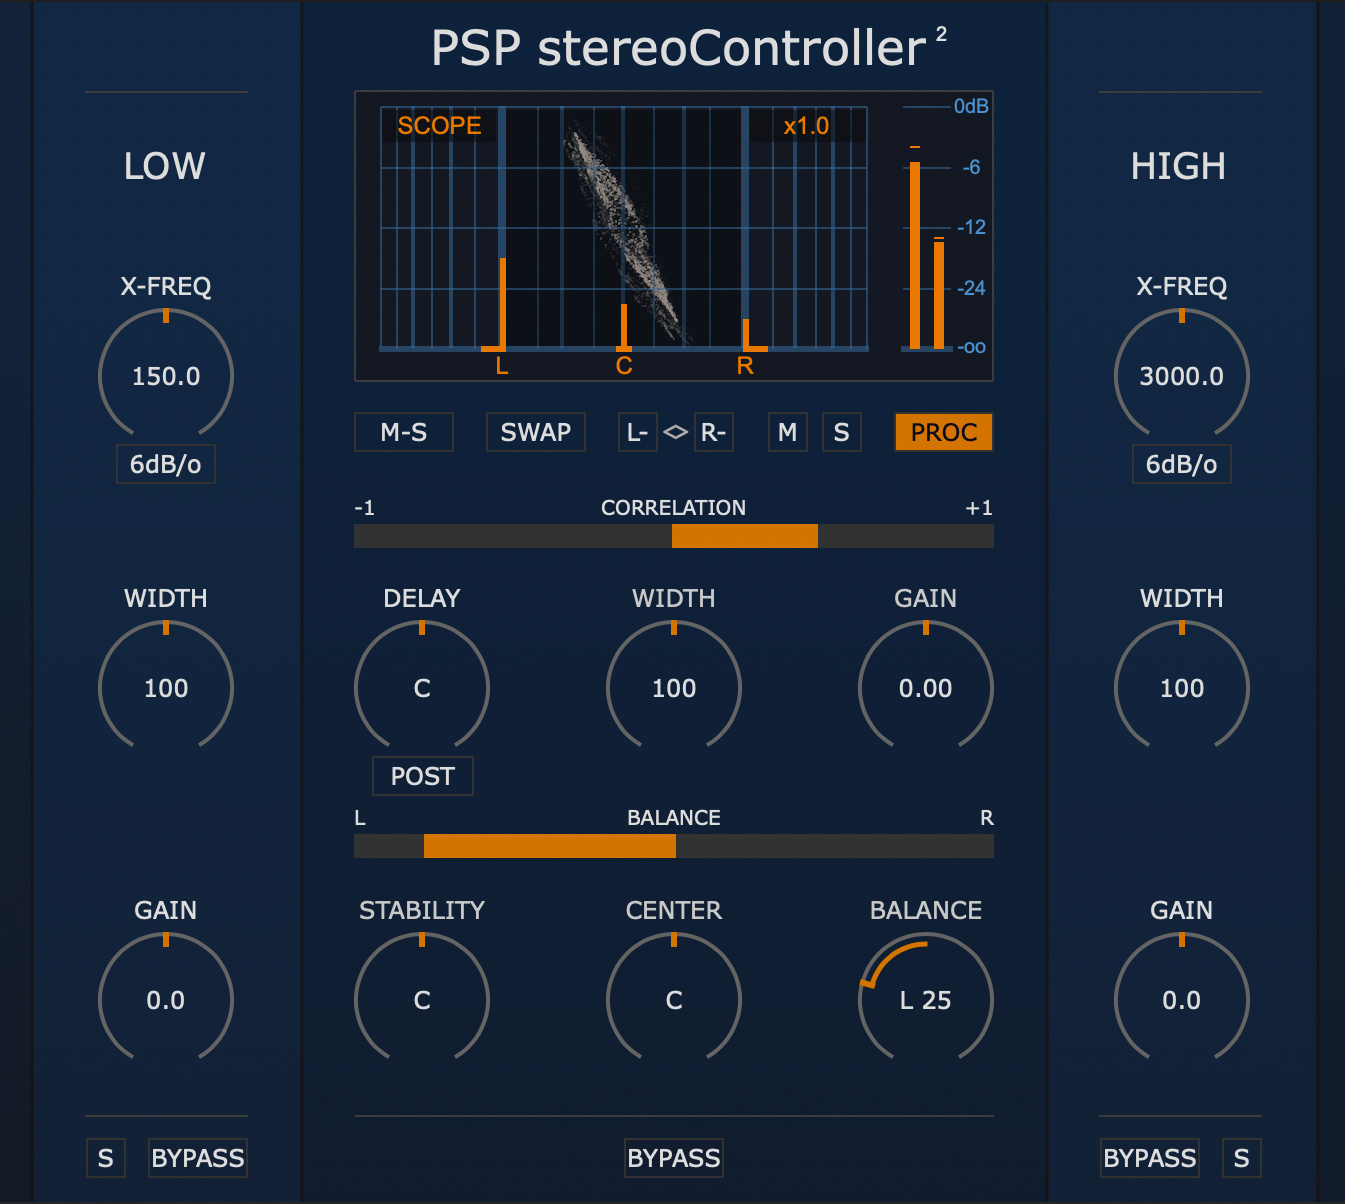 PSP stereoController2